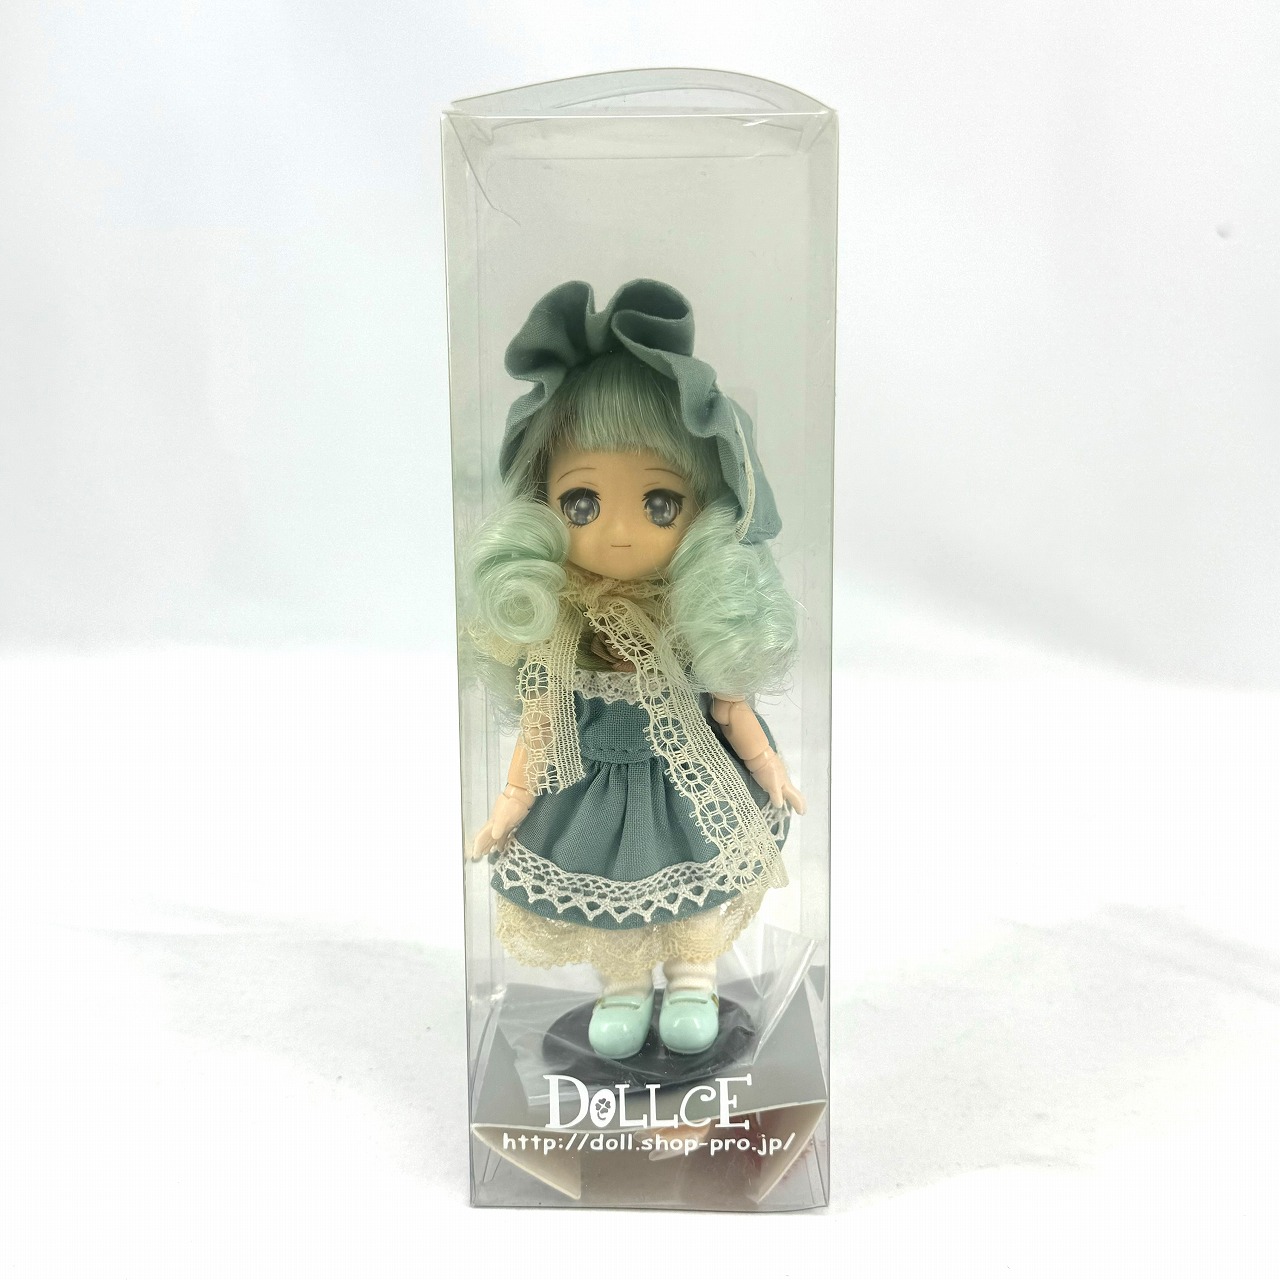 DOLLCE Original Doll Mini Sweets Doll Mint